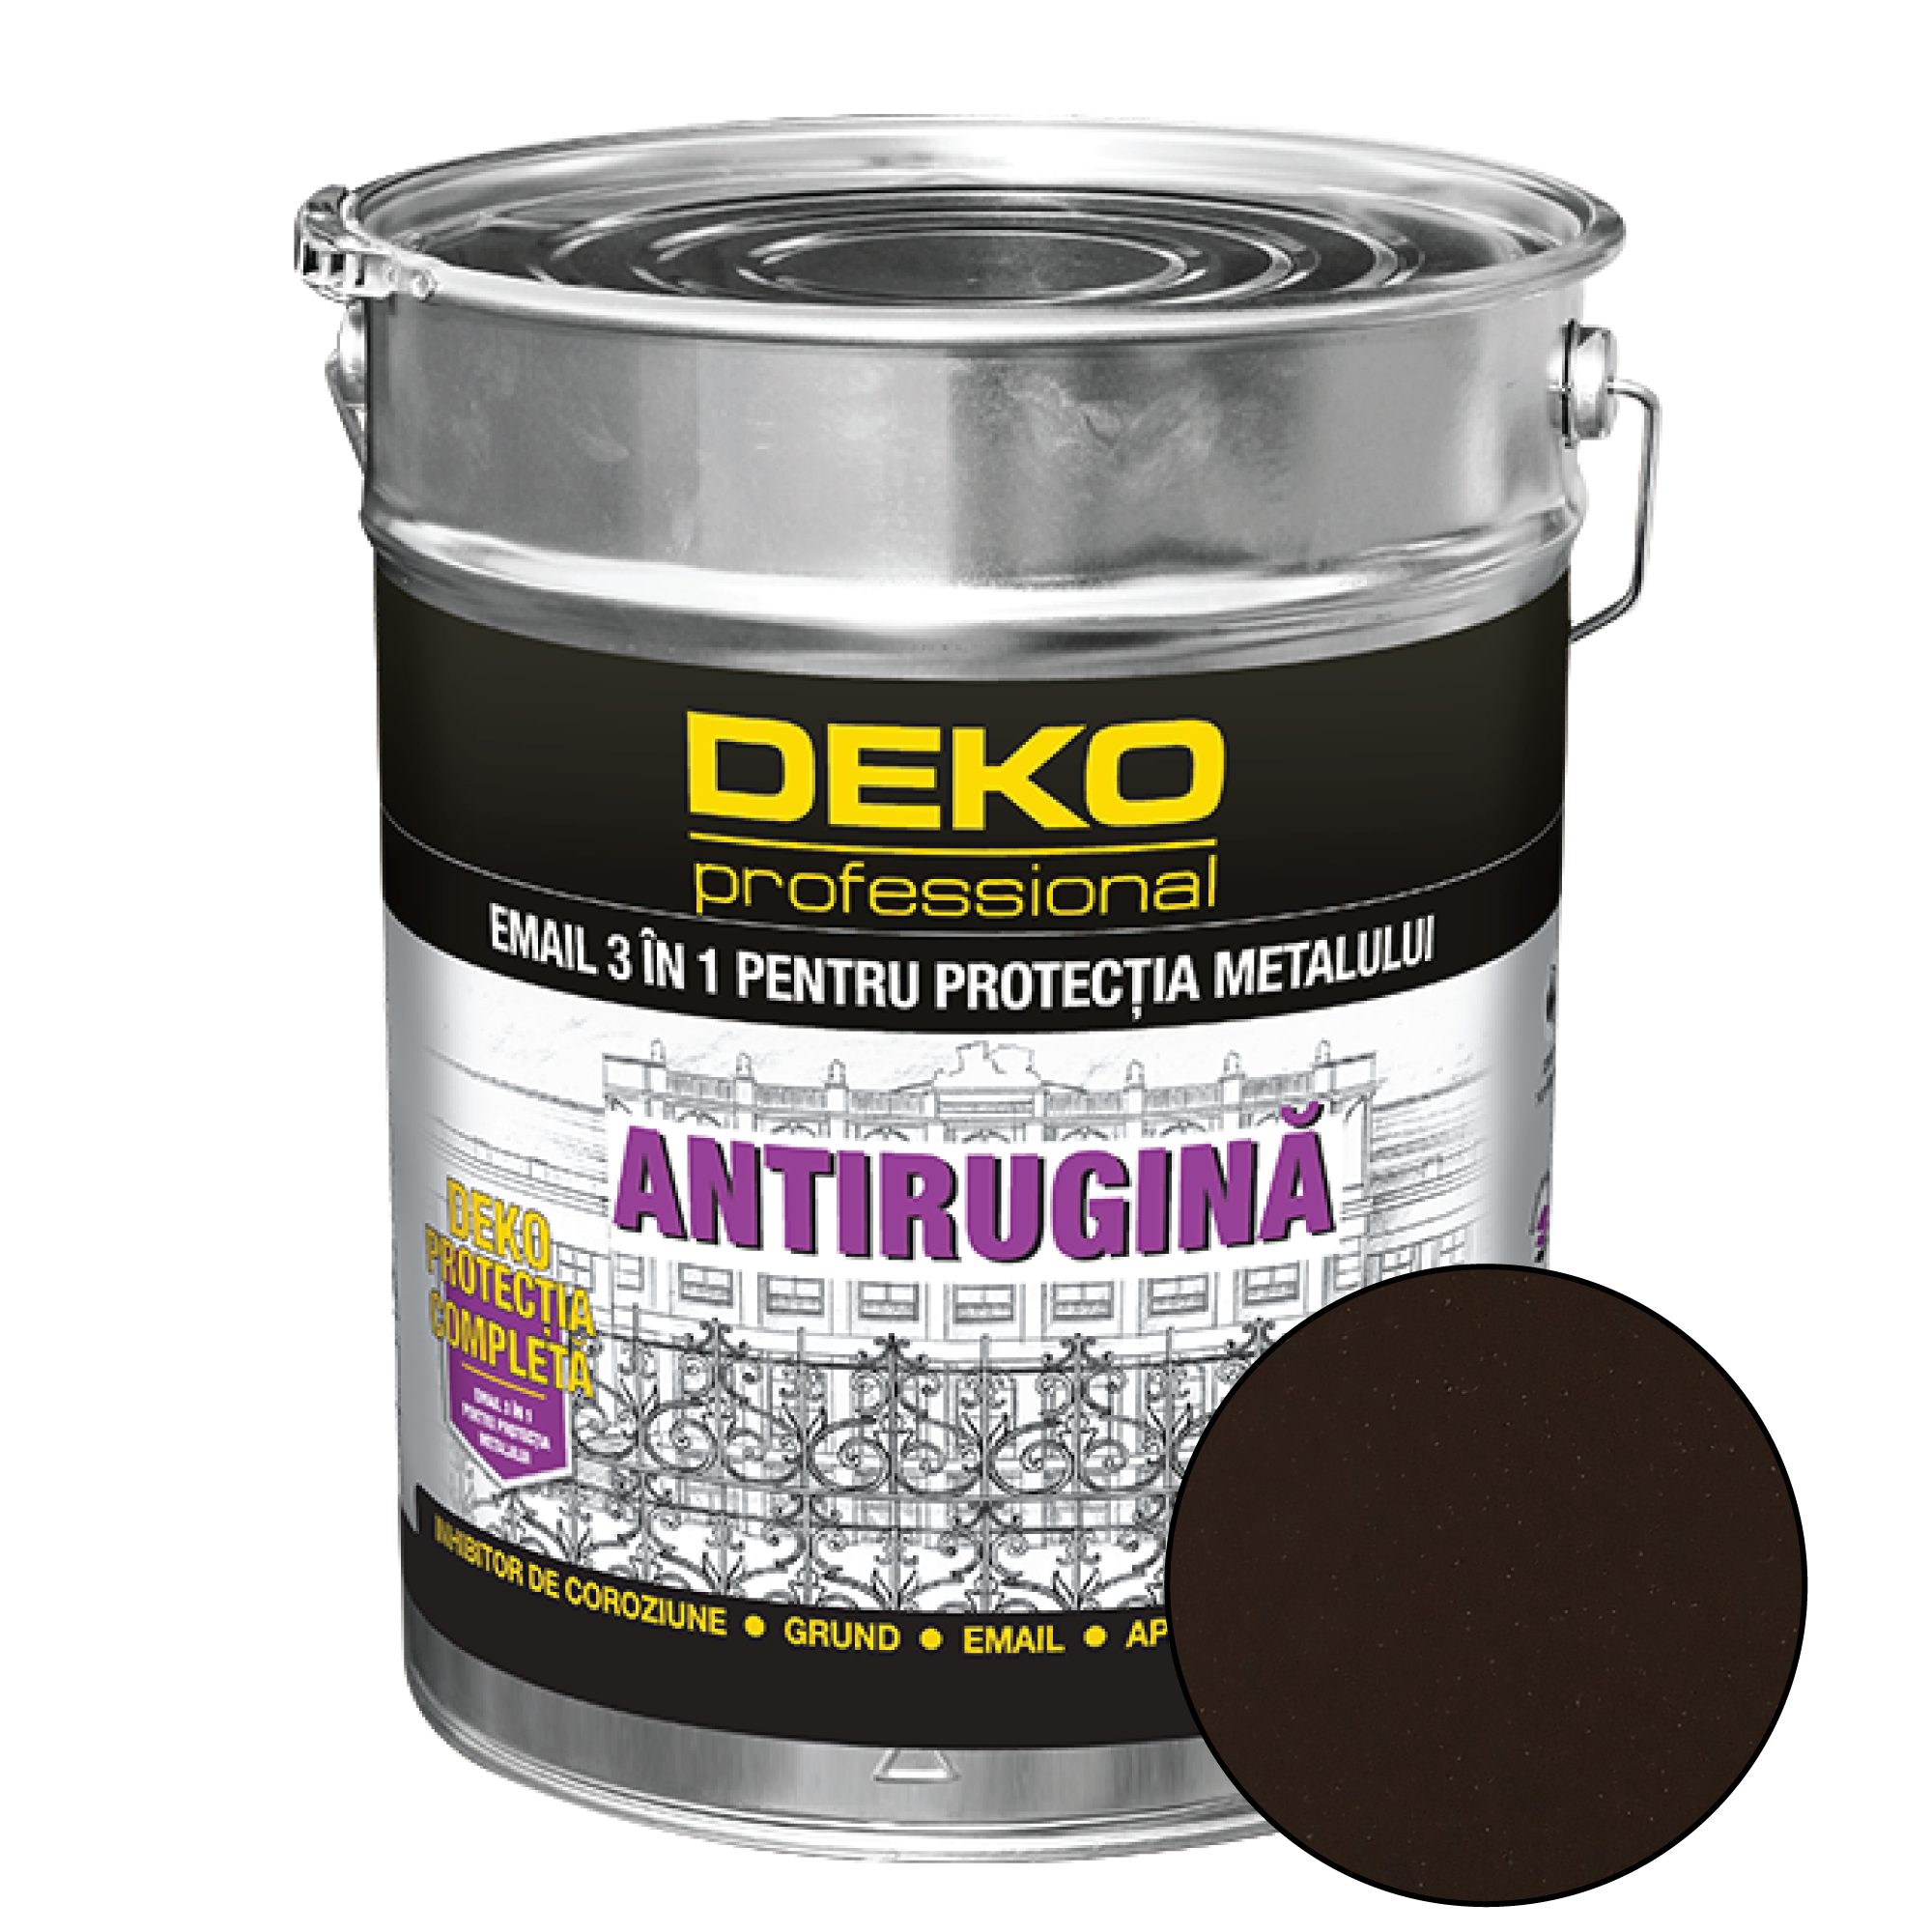 Deko Protectie Completa 3 in 1 Email, maro inchis, interior/exterior, 20 kg acoperis